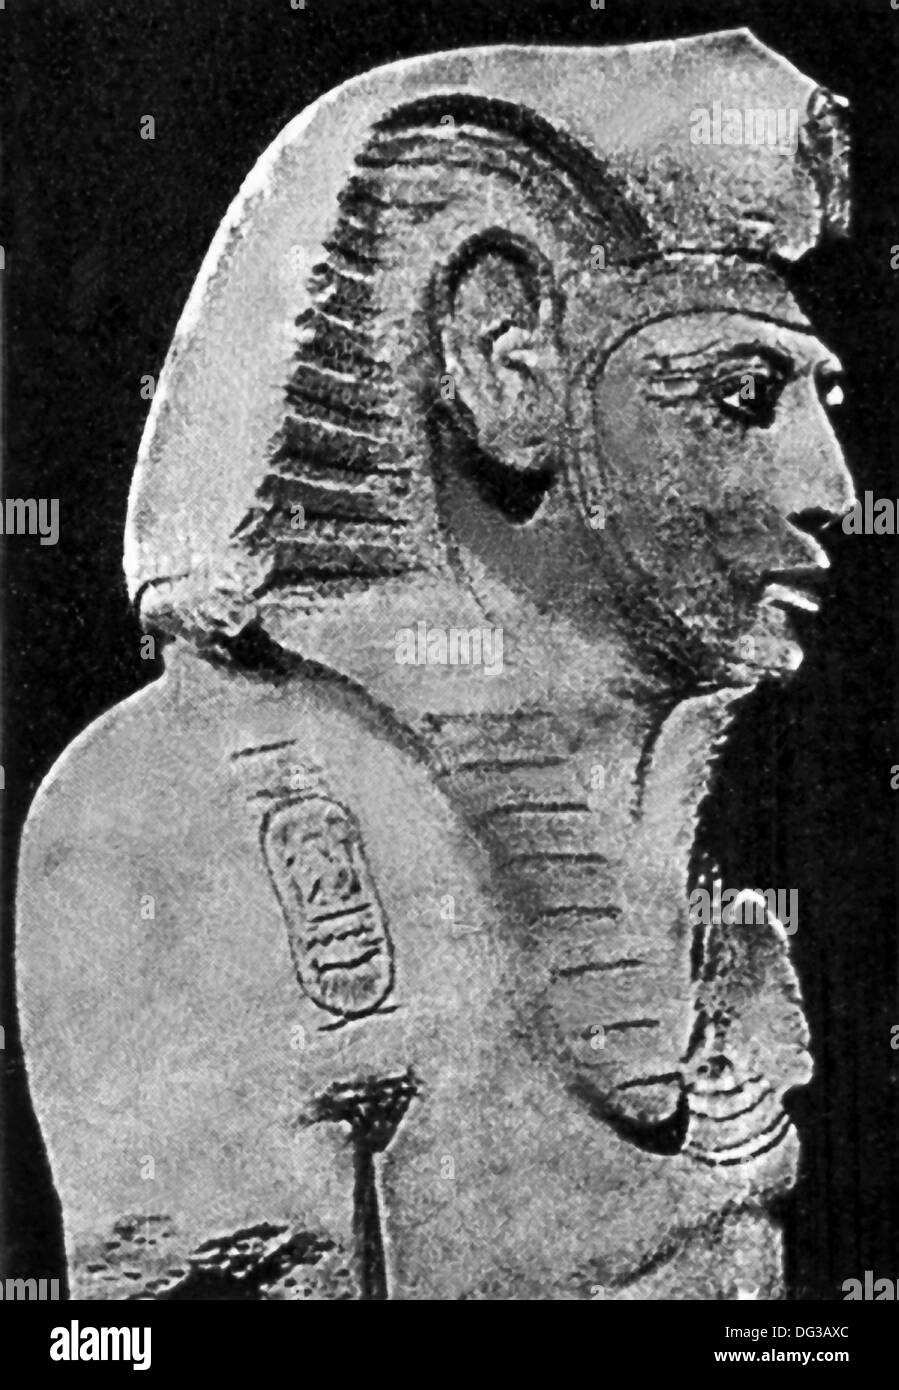 Cette sculpture sculpté d'Amenhotep III est de Thèbes. Amenhotep III était le neuvième pharaon de la xviiième dynastie. Banque D'Images